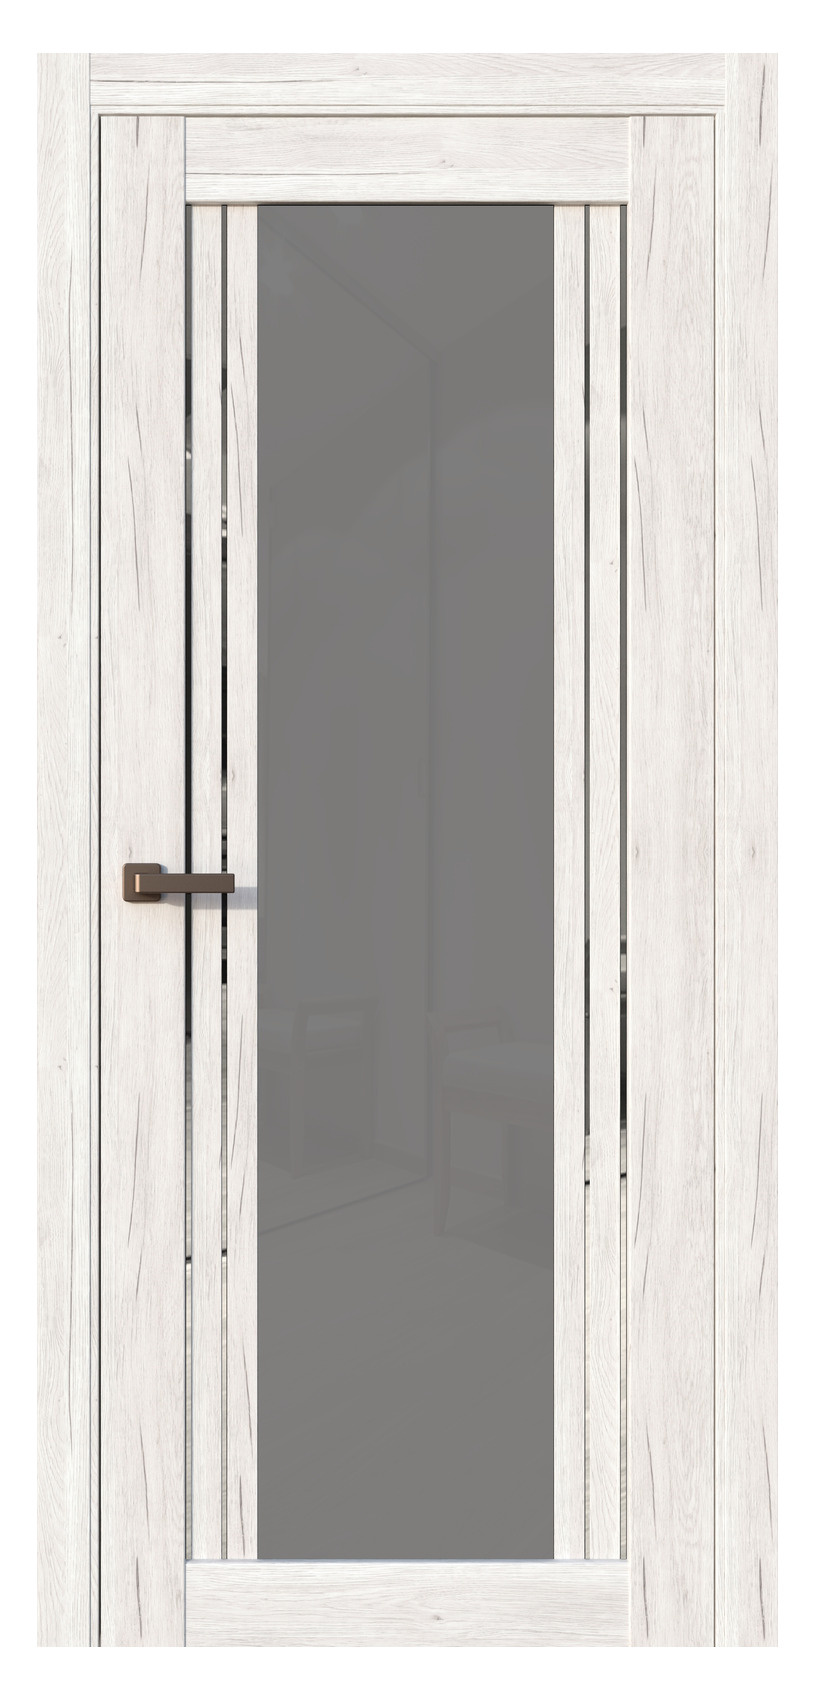 Questdoors Межкомнатная дверь QC3, арт. 17505 - фото №1